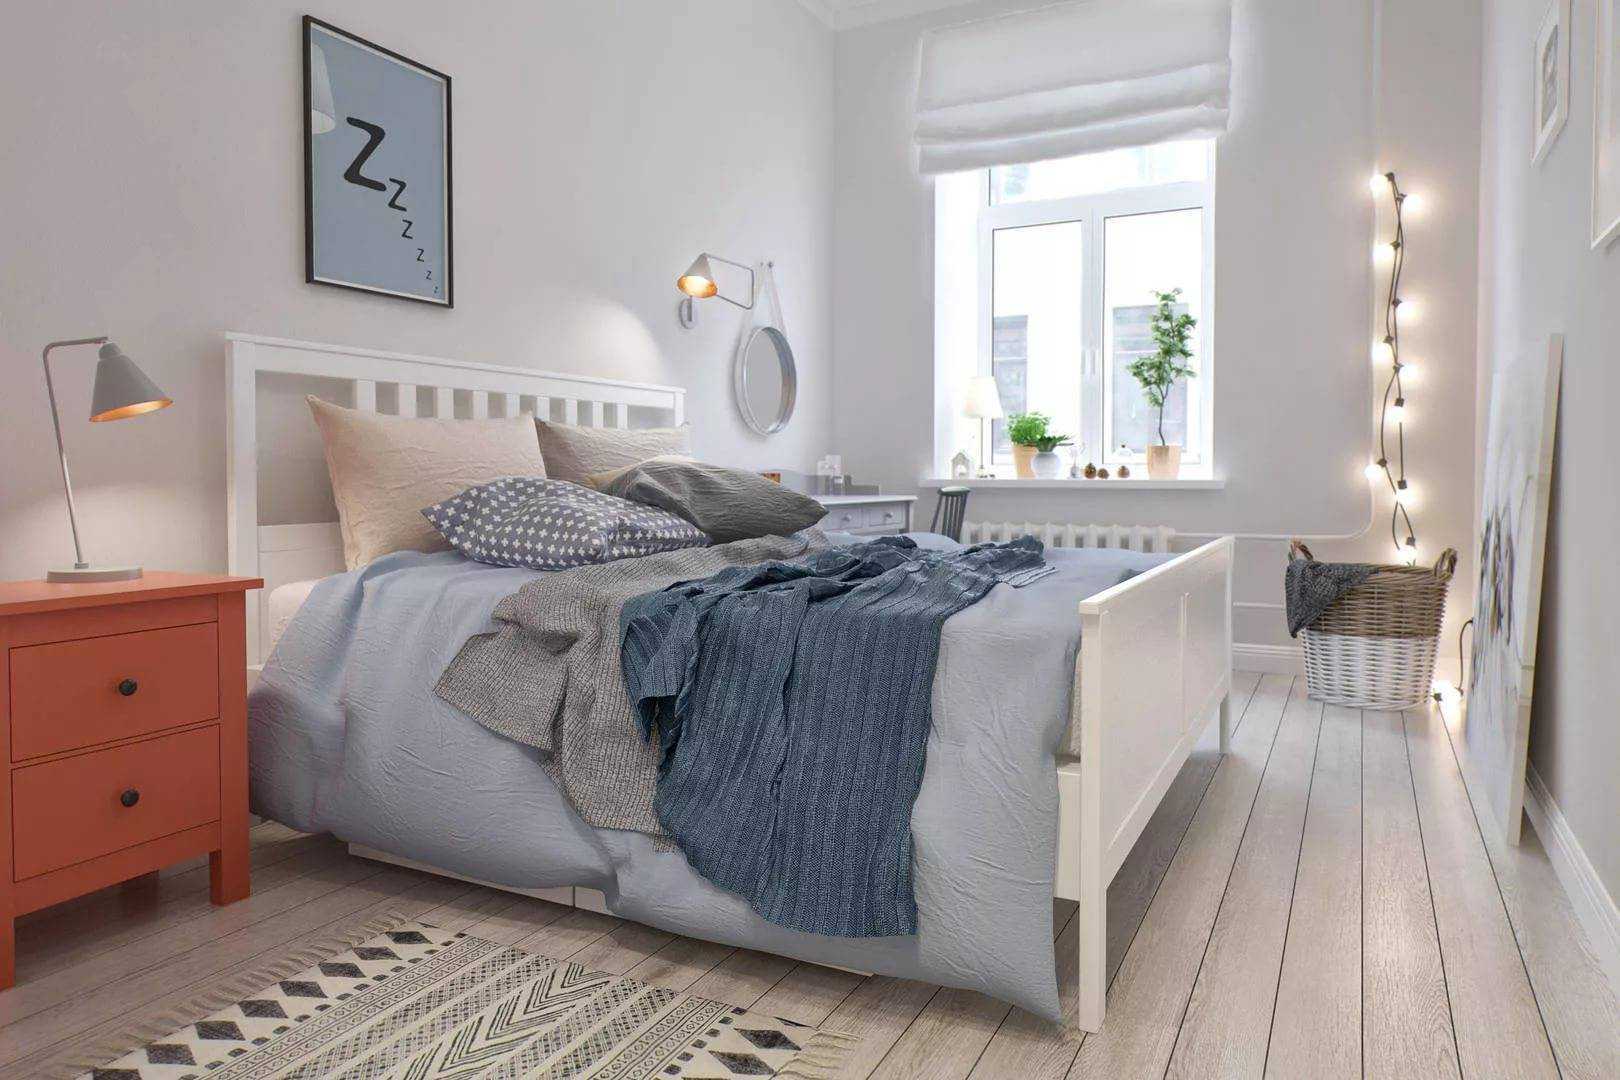 Кровать в скандинавском стиле роскошно смотрится в интерьере Стоит подробнее рассмотреть, где лучше использовать двуспальные и односпальные модели, а также что лучше: конструкции из массива дерева или металла, на ножках или без